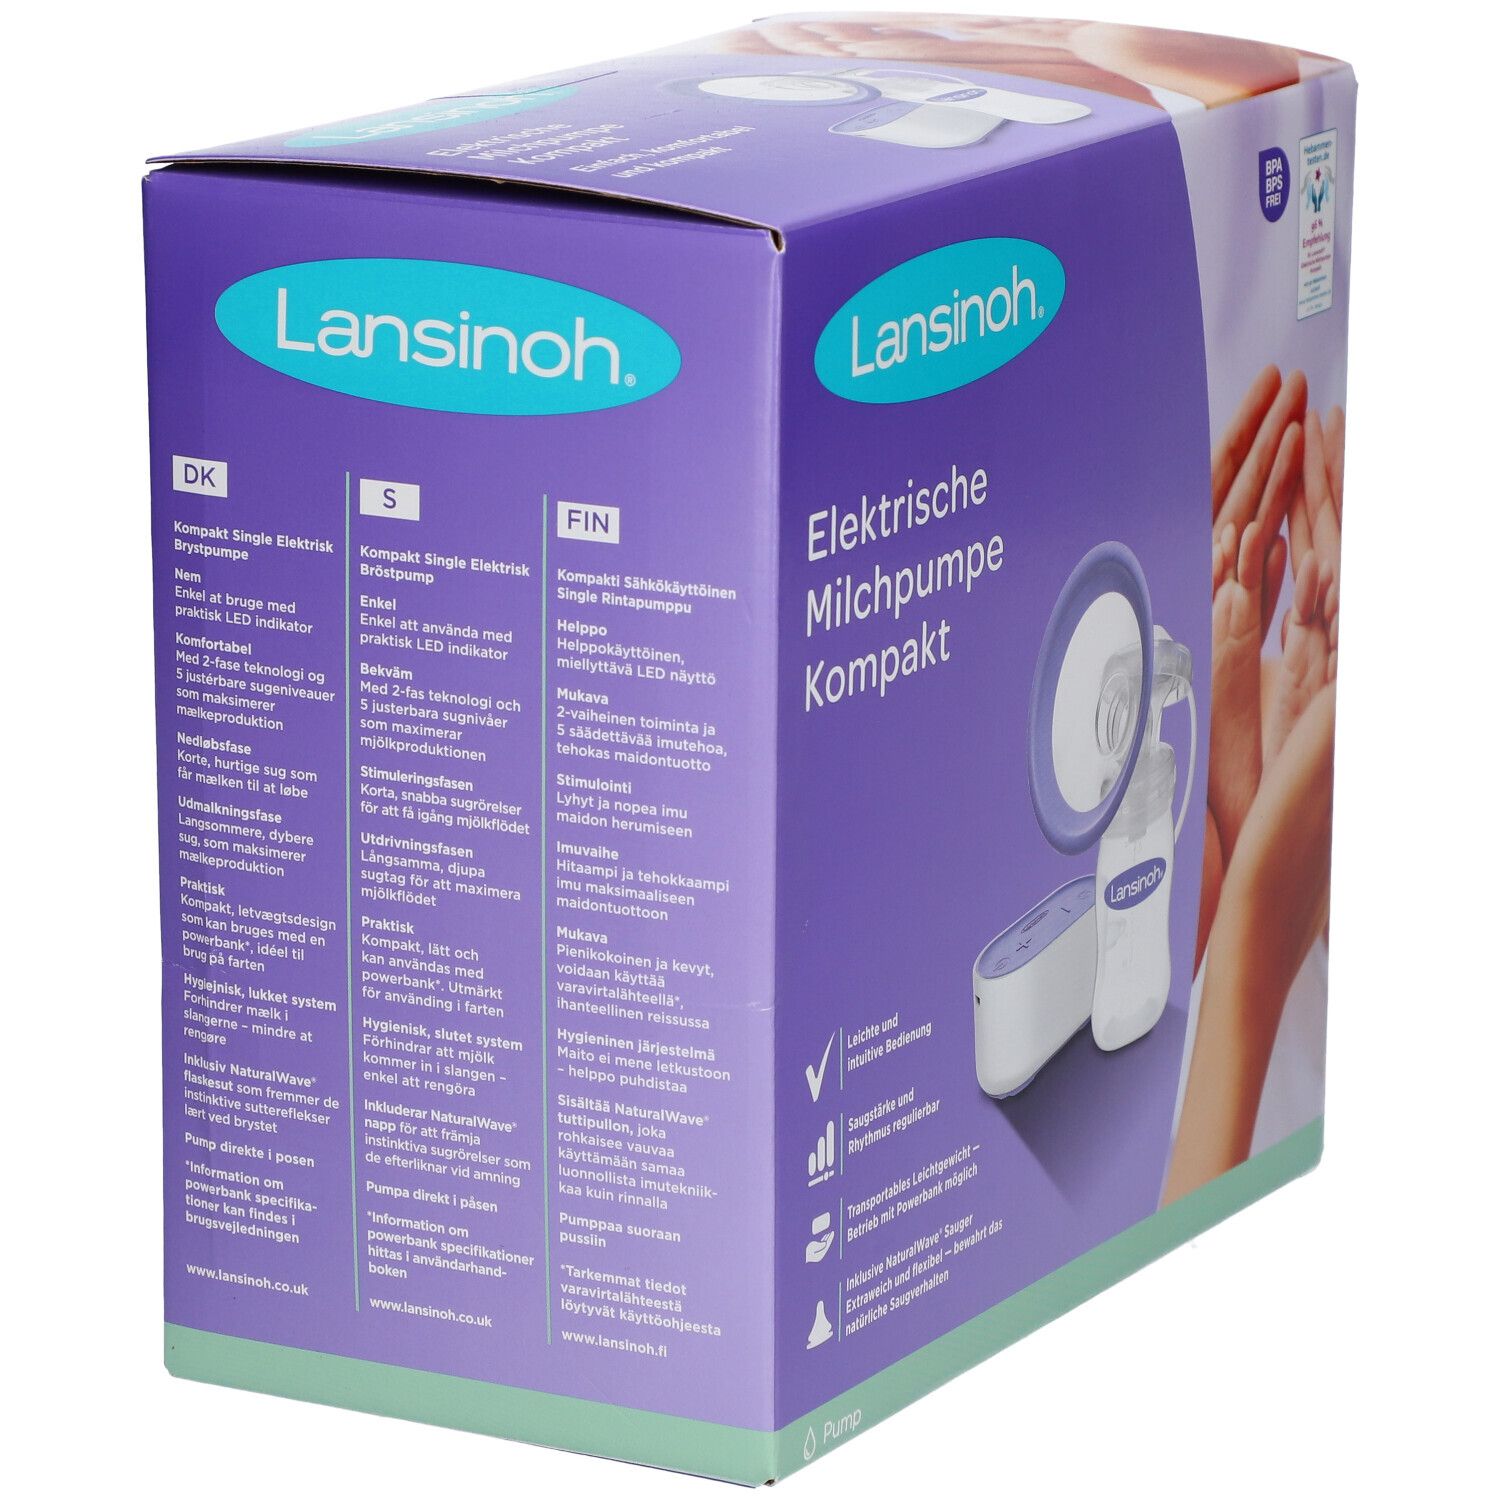 Lansinoh® elektrische Milchpumpe Kompakt